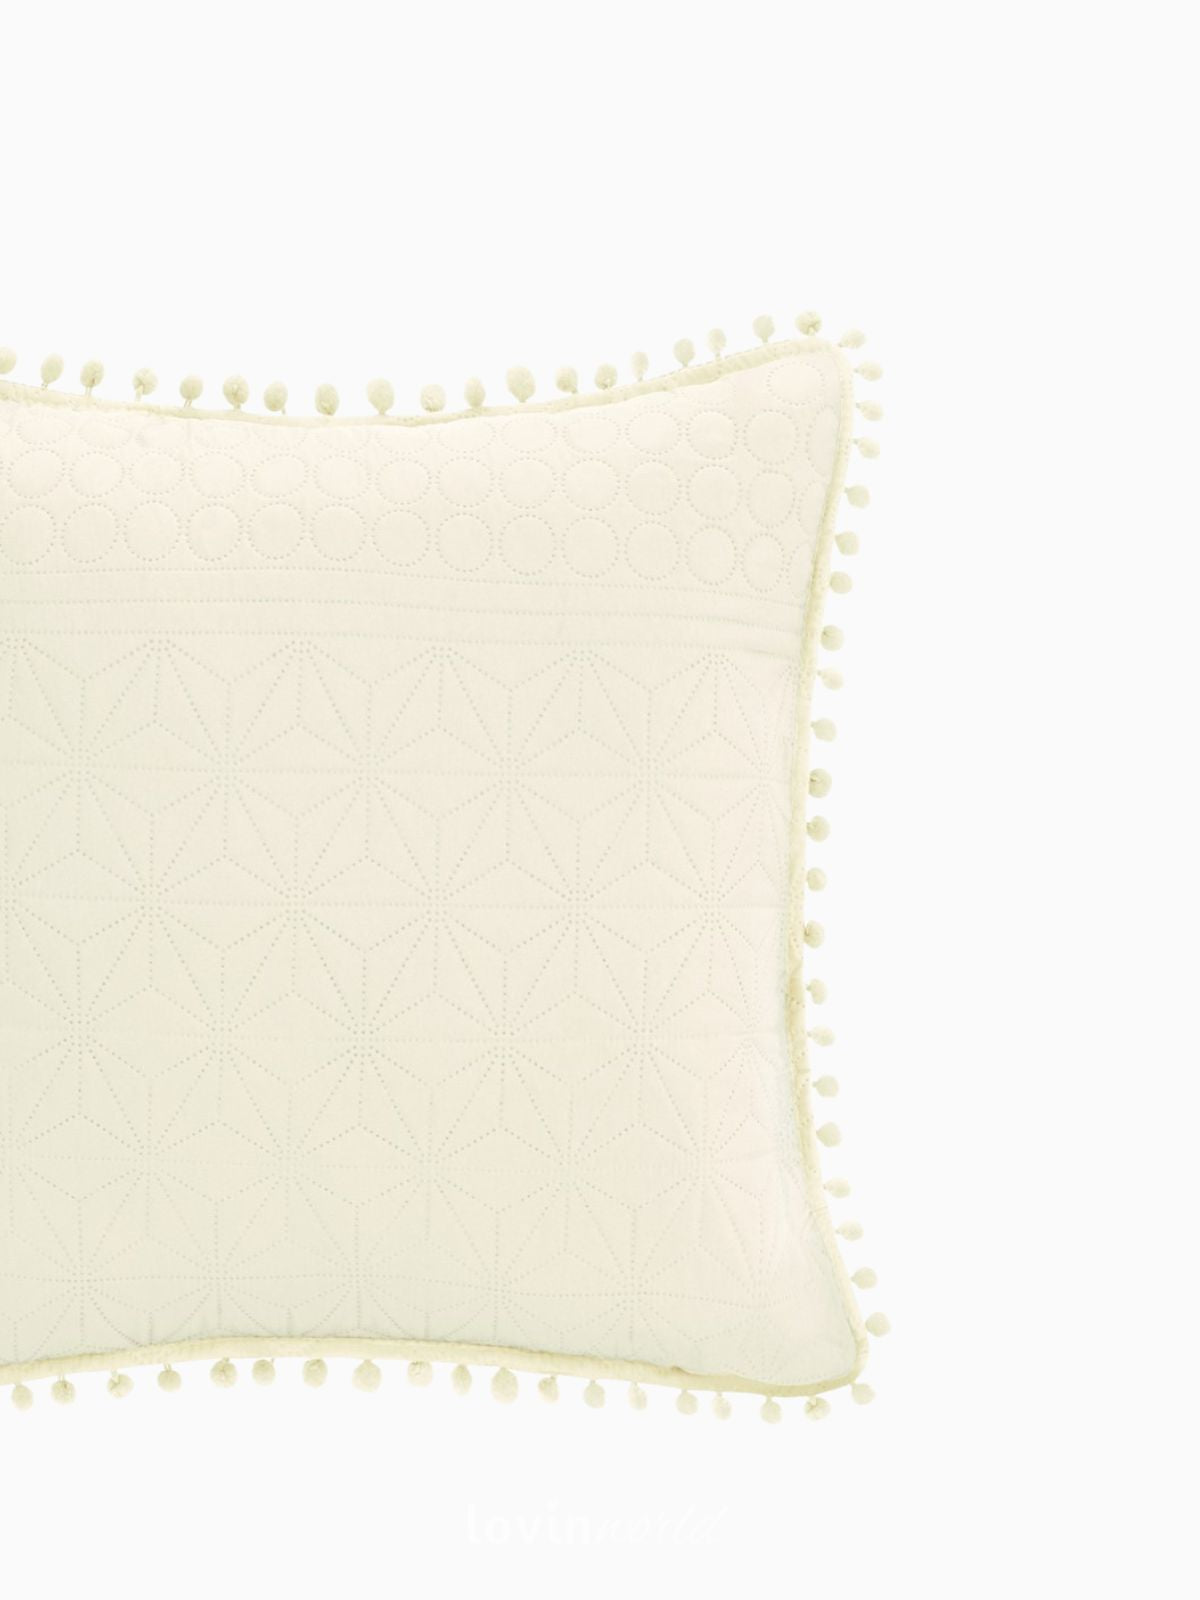 Cuscino decorativo Meadore in colore crema 45x45 cm.-3